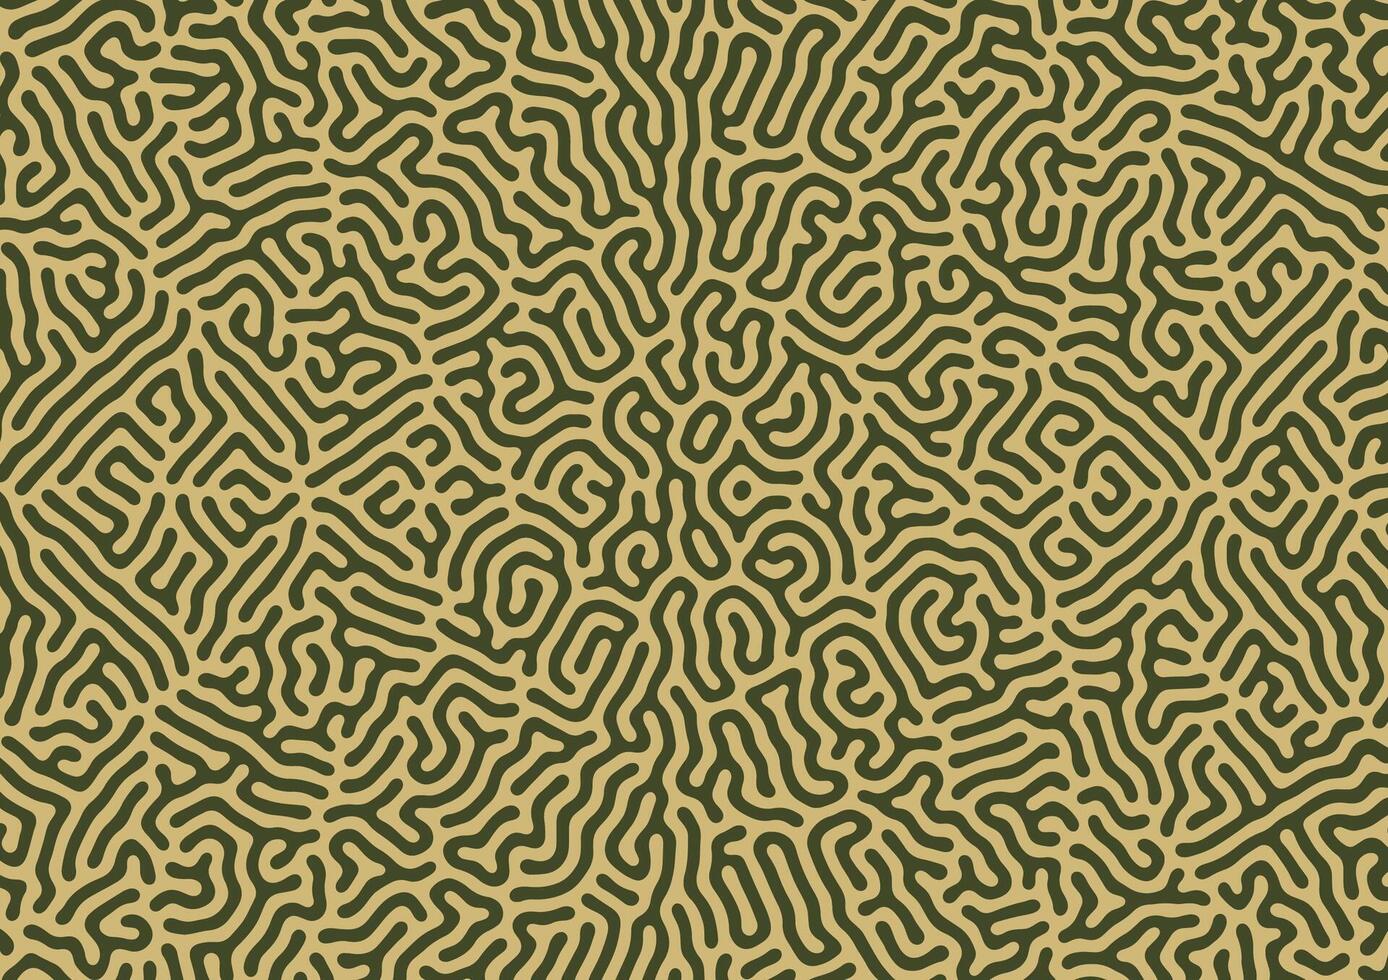 turing Reaktion Diffusion Muster mit abstrakt Bewegung. Vektor Illustration von chemisch Morphogenese kurvig Gekritzel.